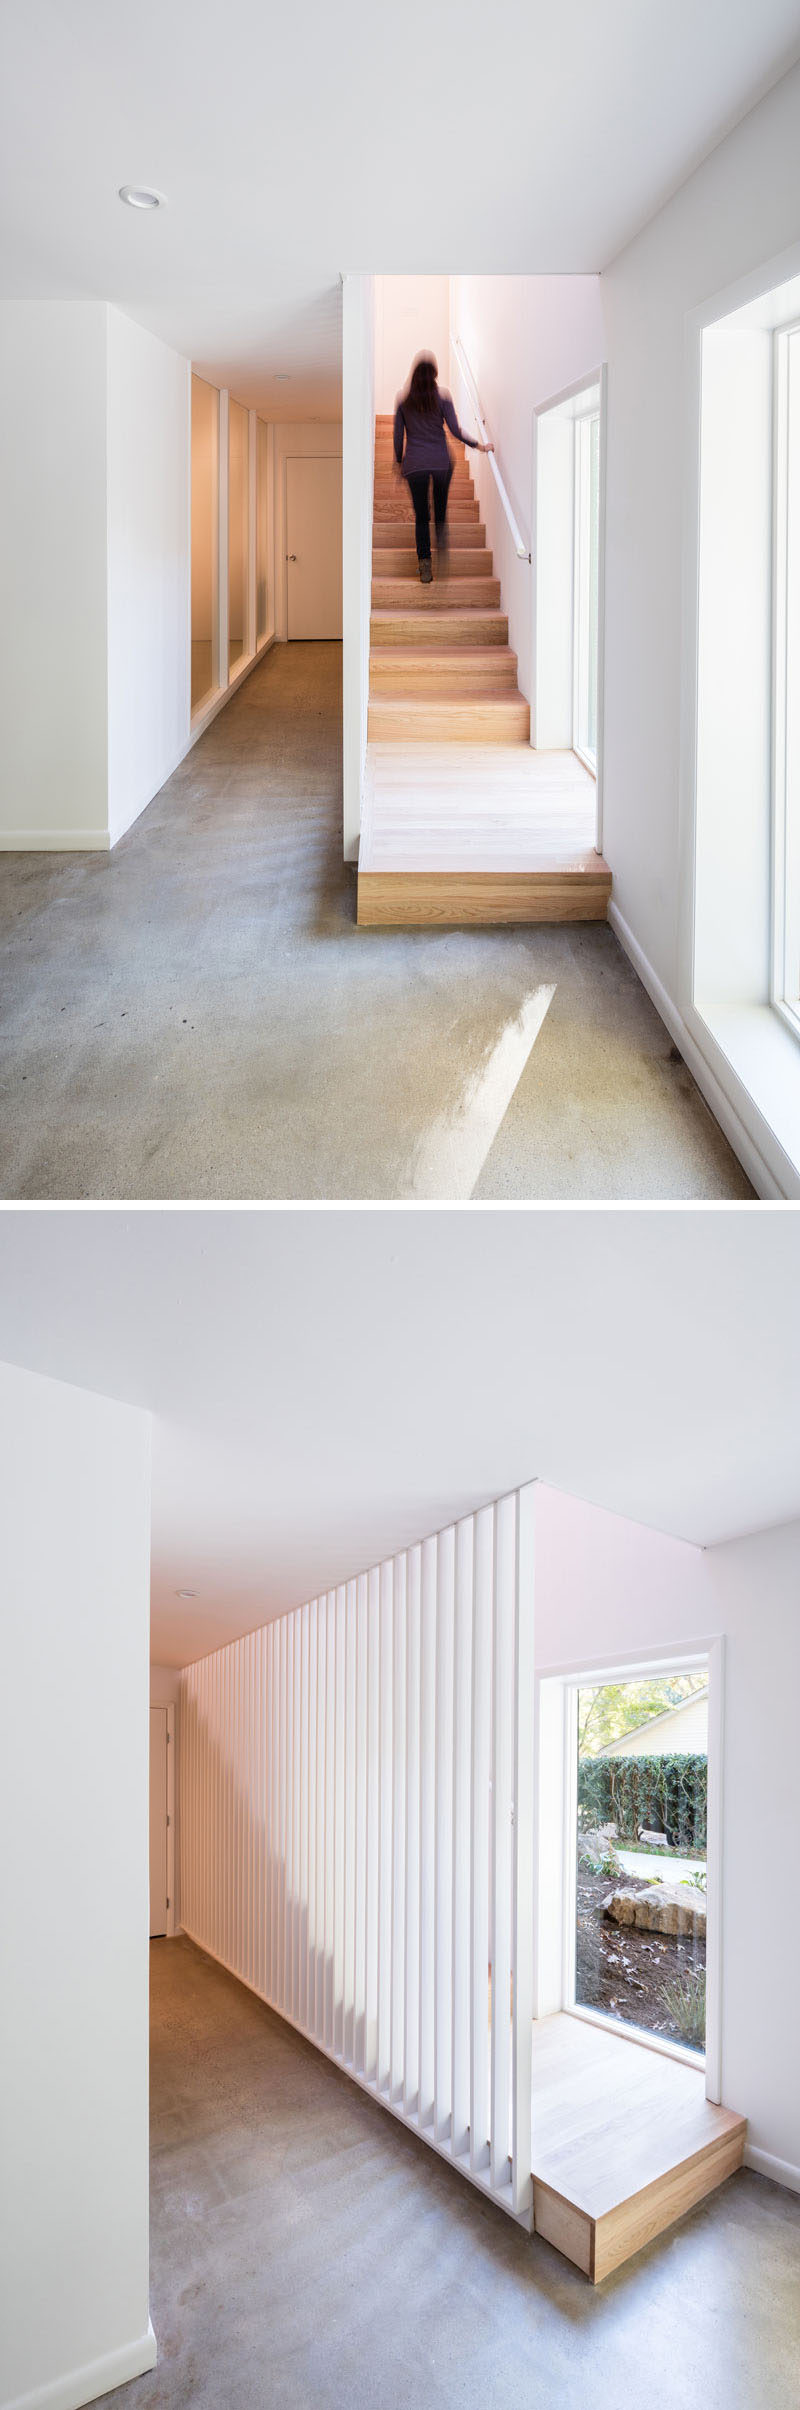 Эти простые и современные деревянные лестницы добавляют естественности белому интерьеру, а планки позволяют свету из окна проходить через пространство.